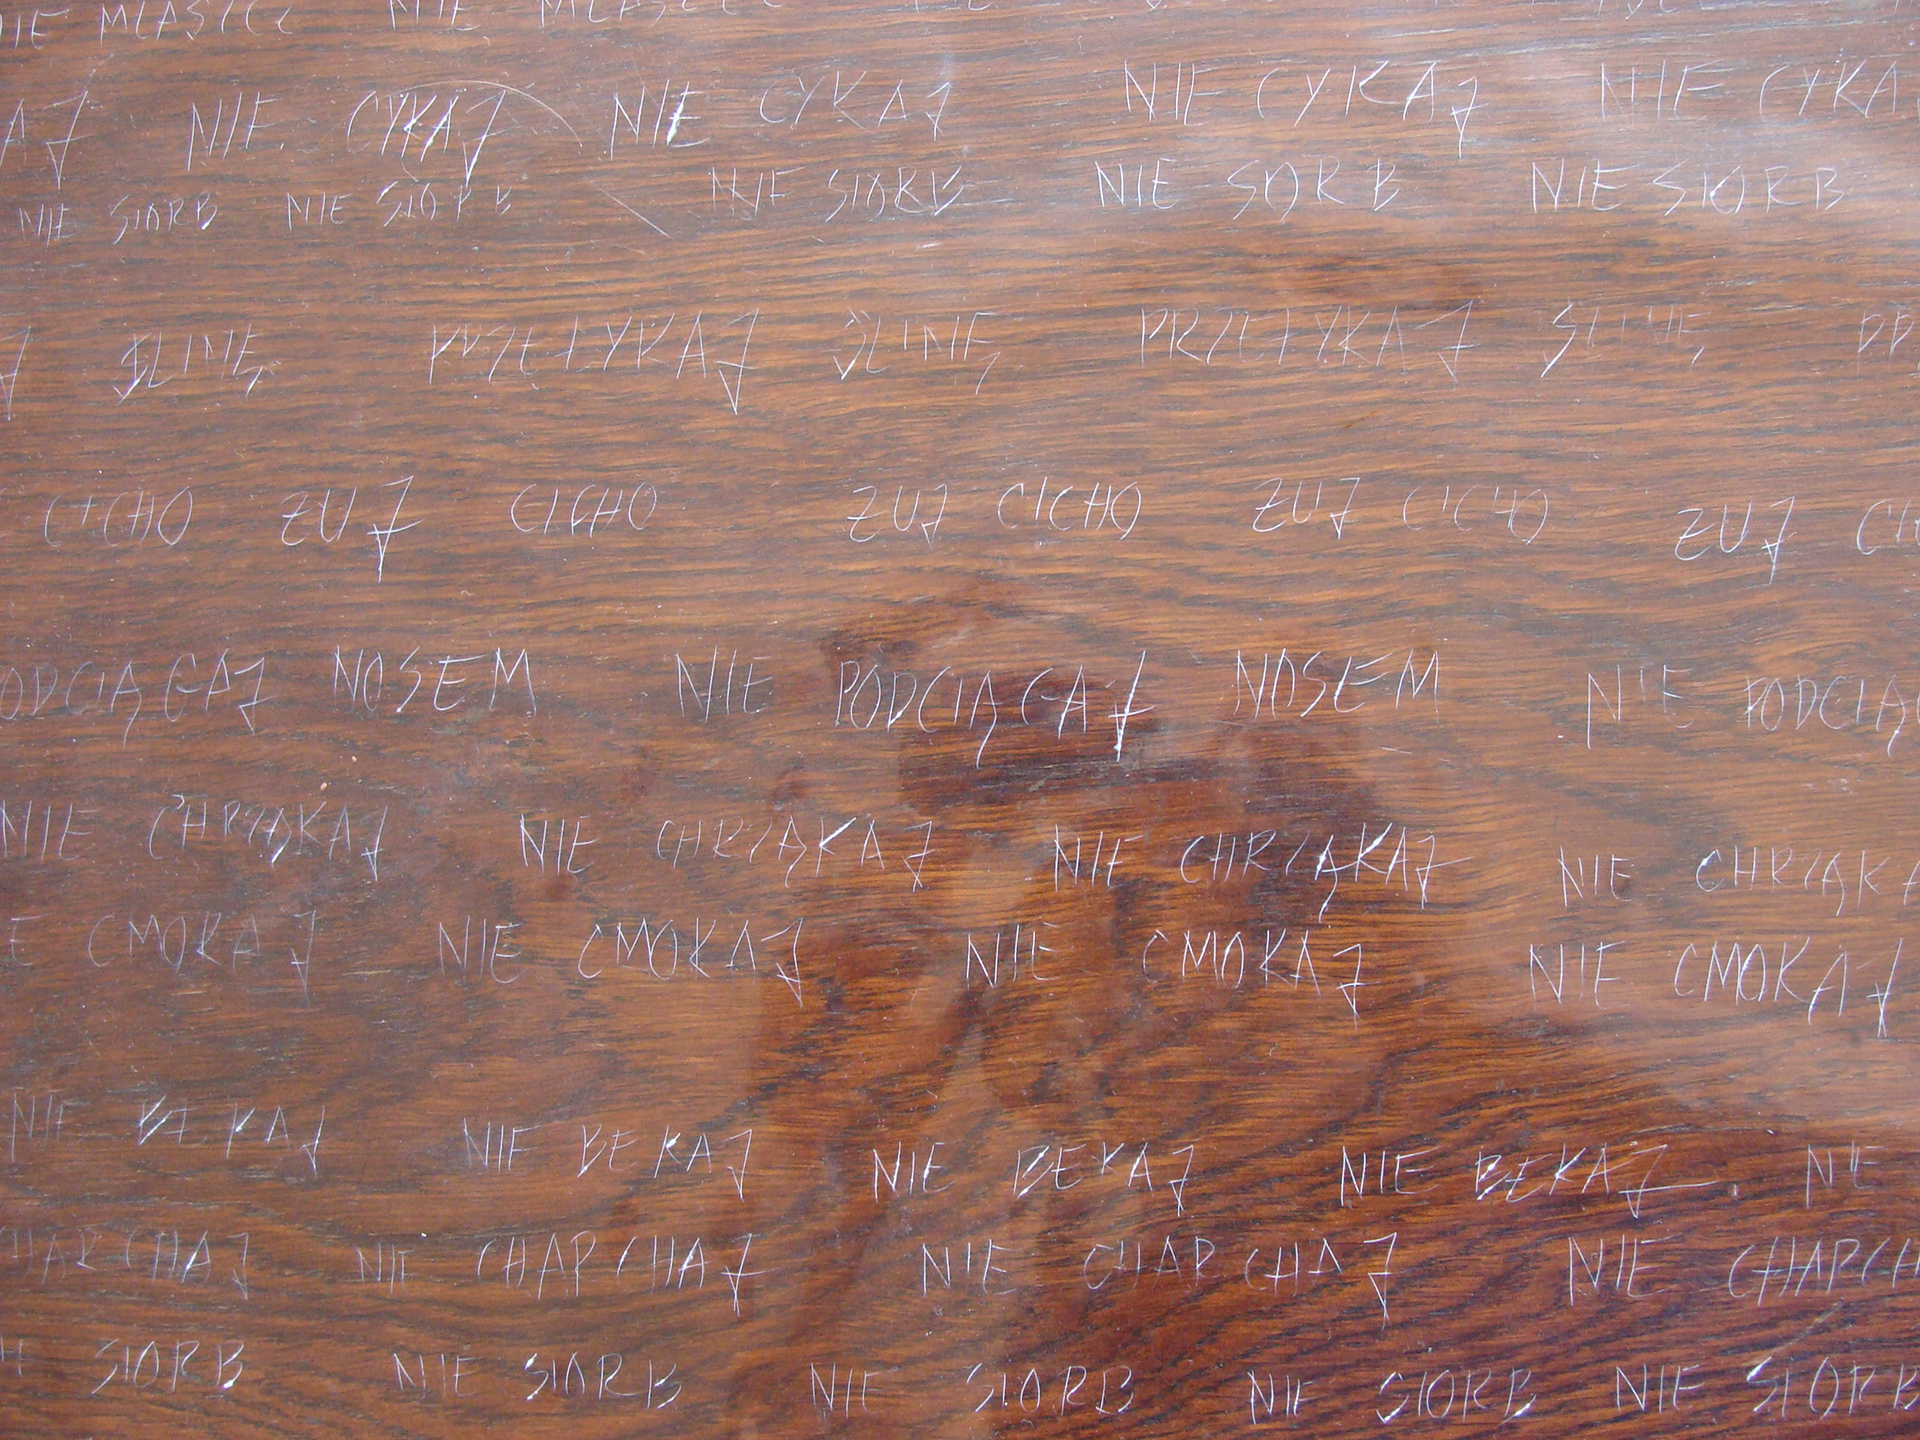 Napisy wyryte igłą w drewnie.